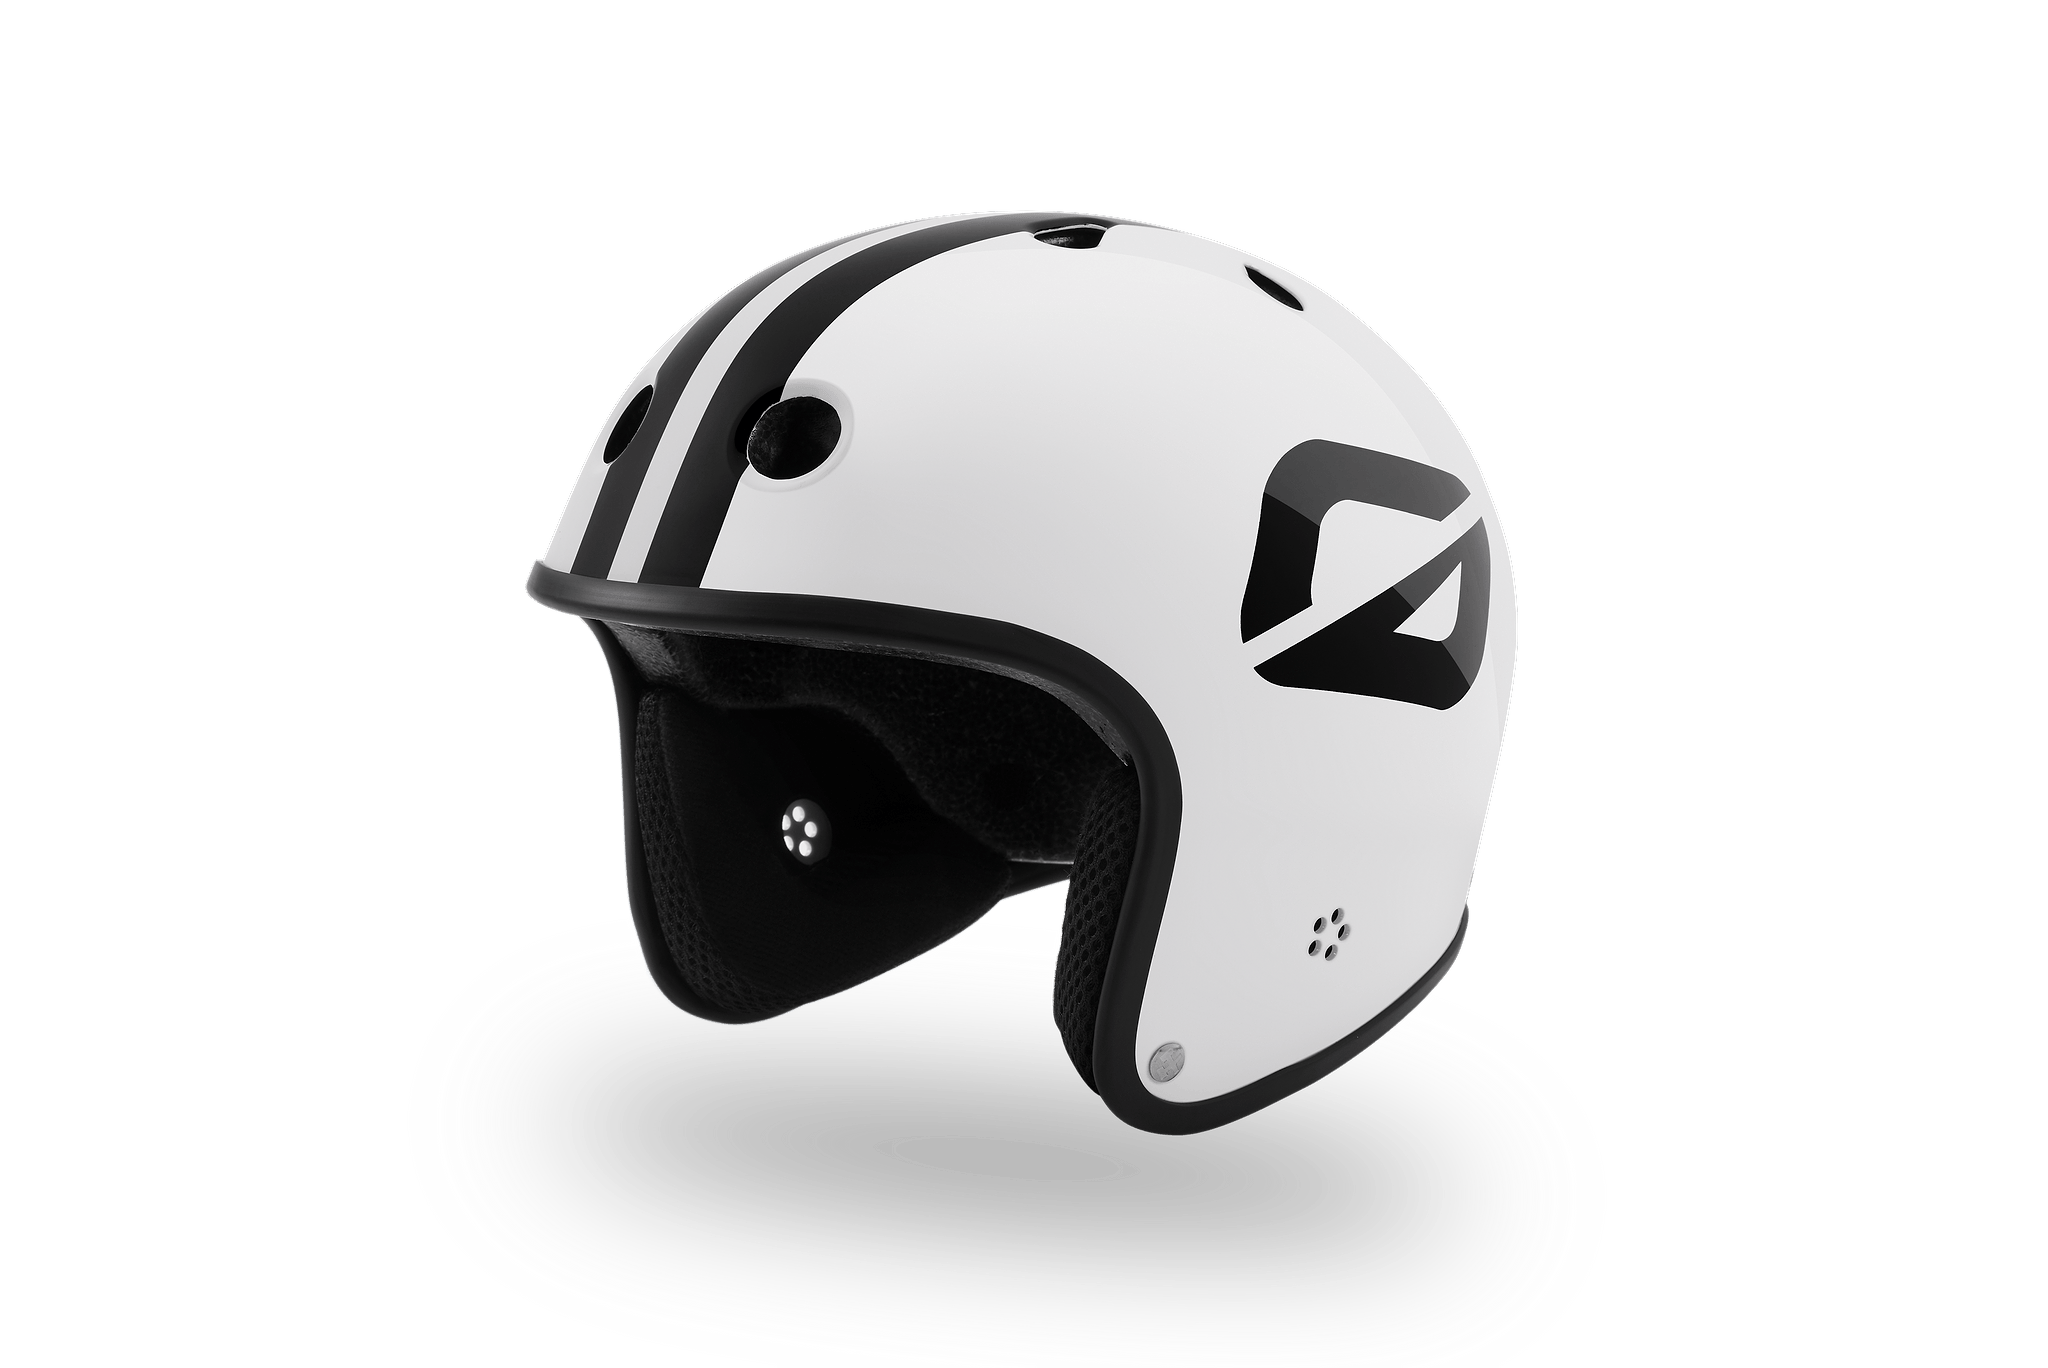 Onewheel S1 Retro Helmet